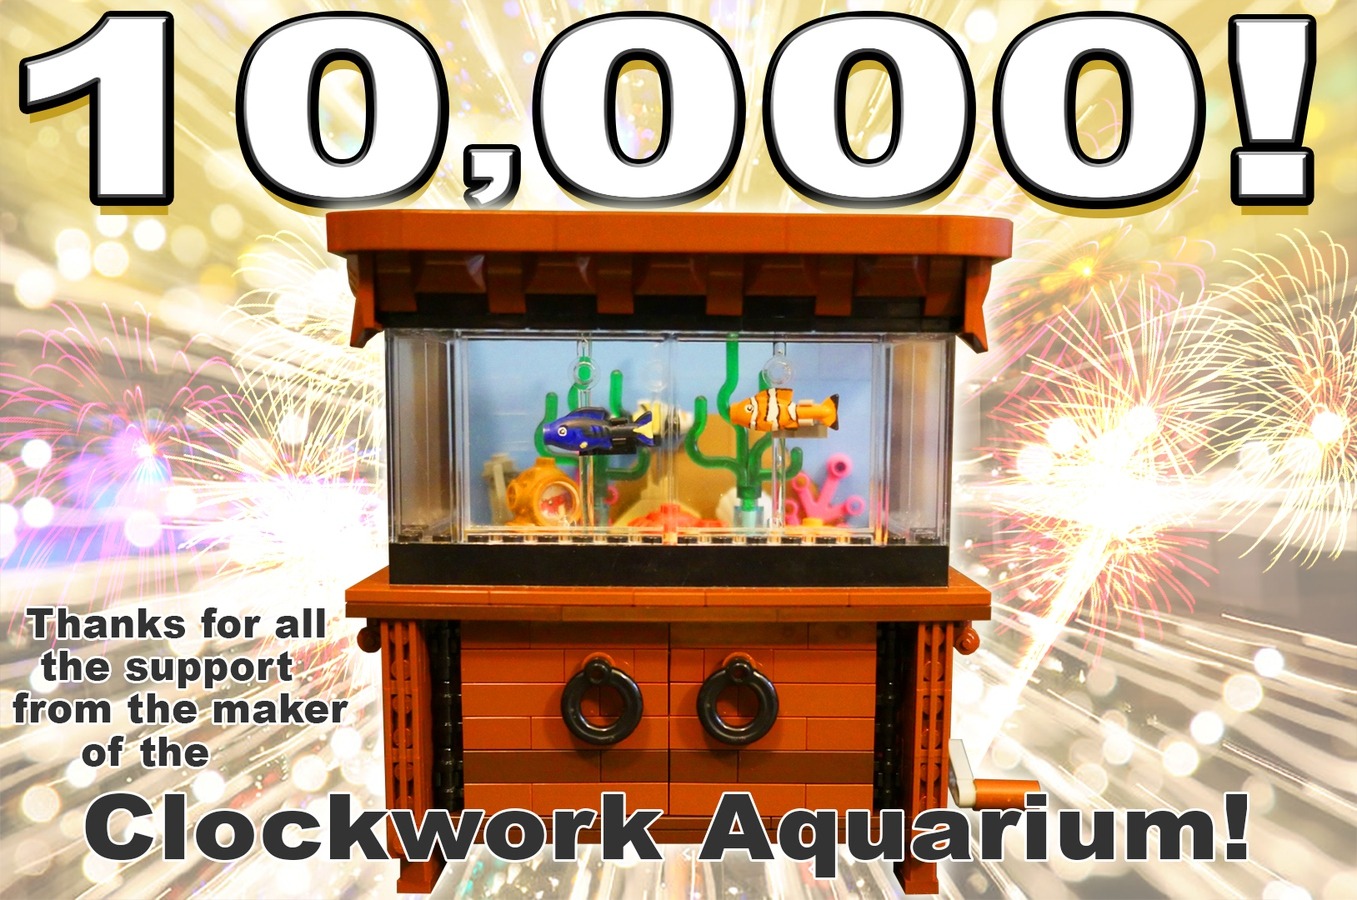 Clockwork Aquarium reached 10,000 Supporters!